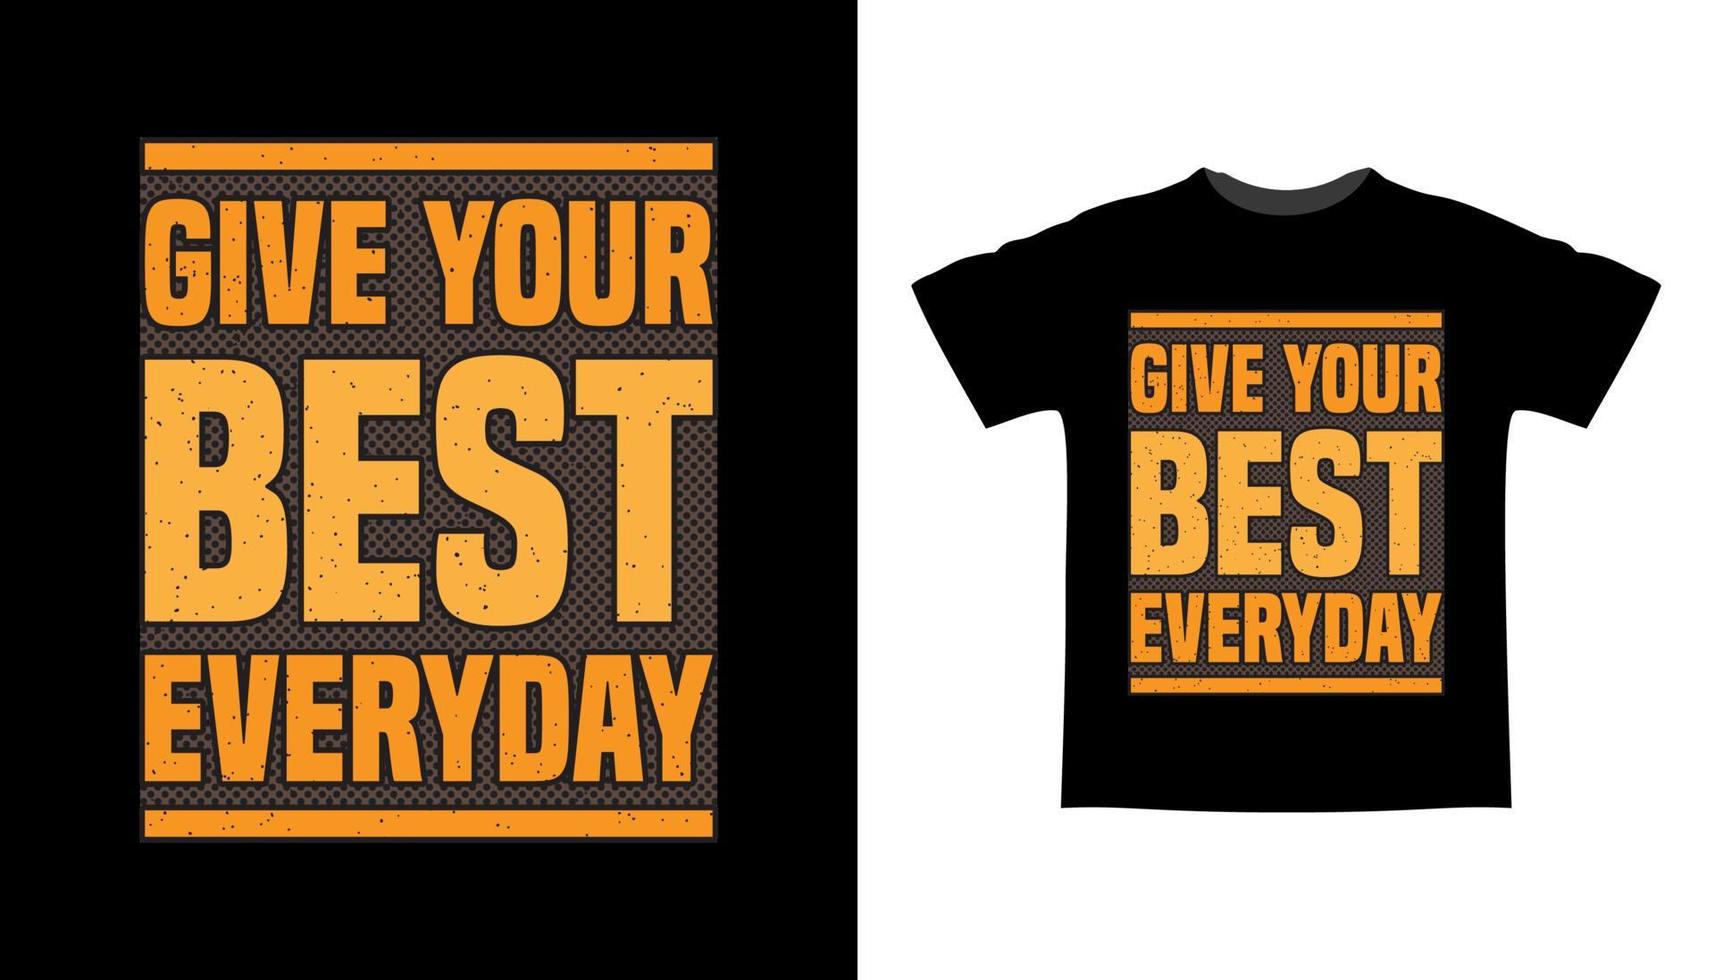 Geben Sie Ihr bestes alltägliches Typografie-T-Shirt-Design vektor